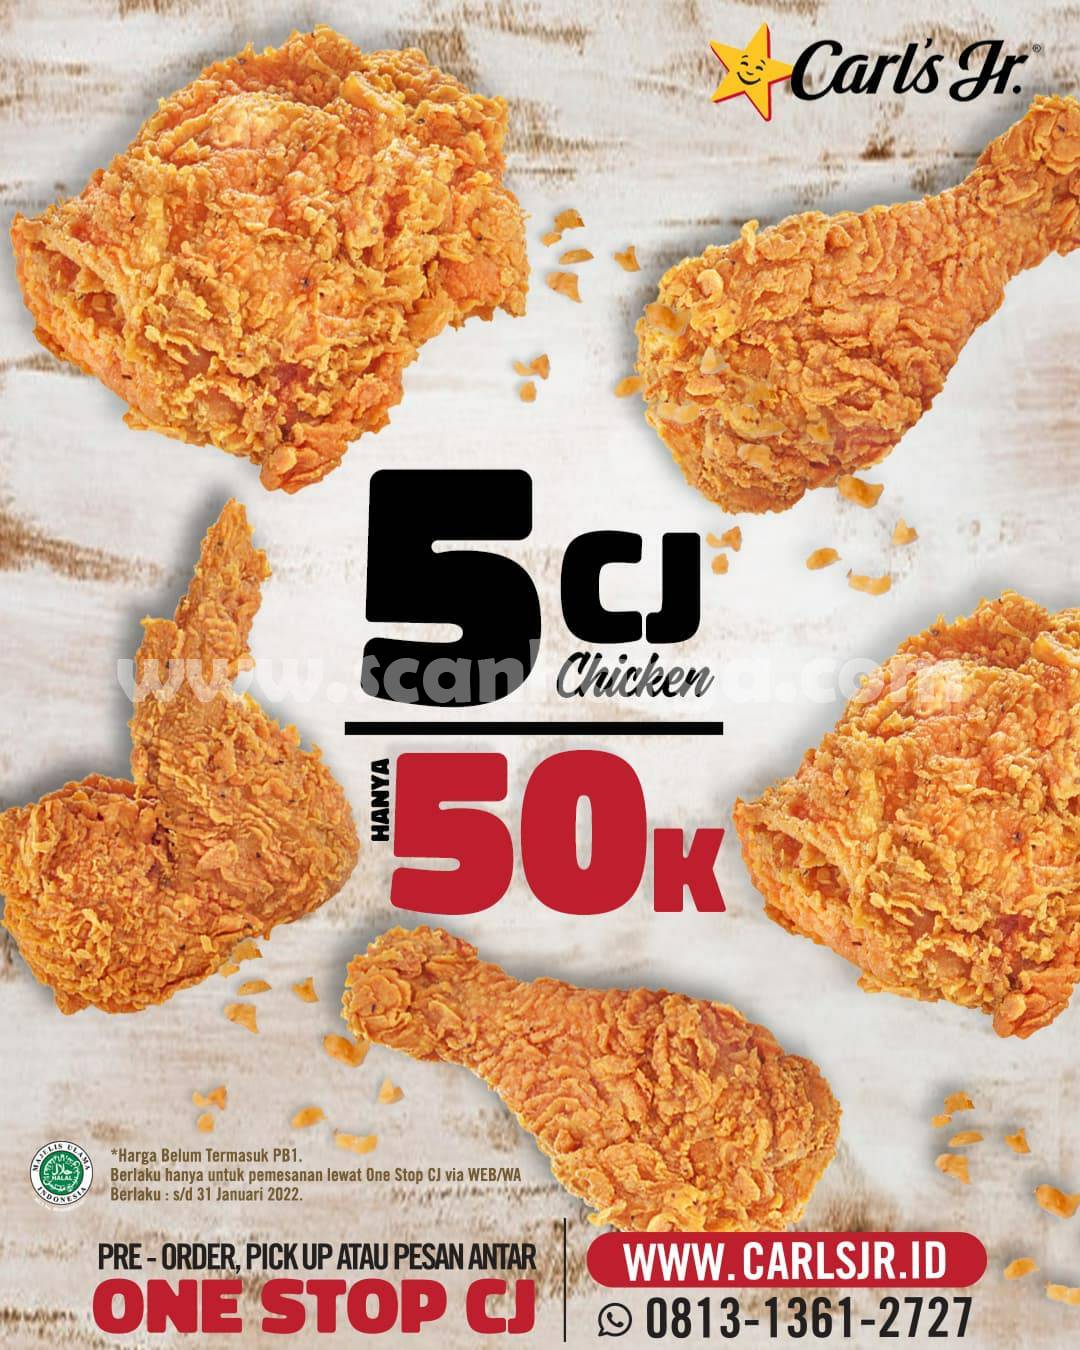 Carl's Jr Promo Harga Spesial 5 CJ Chicken hanya 50K